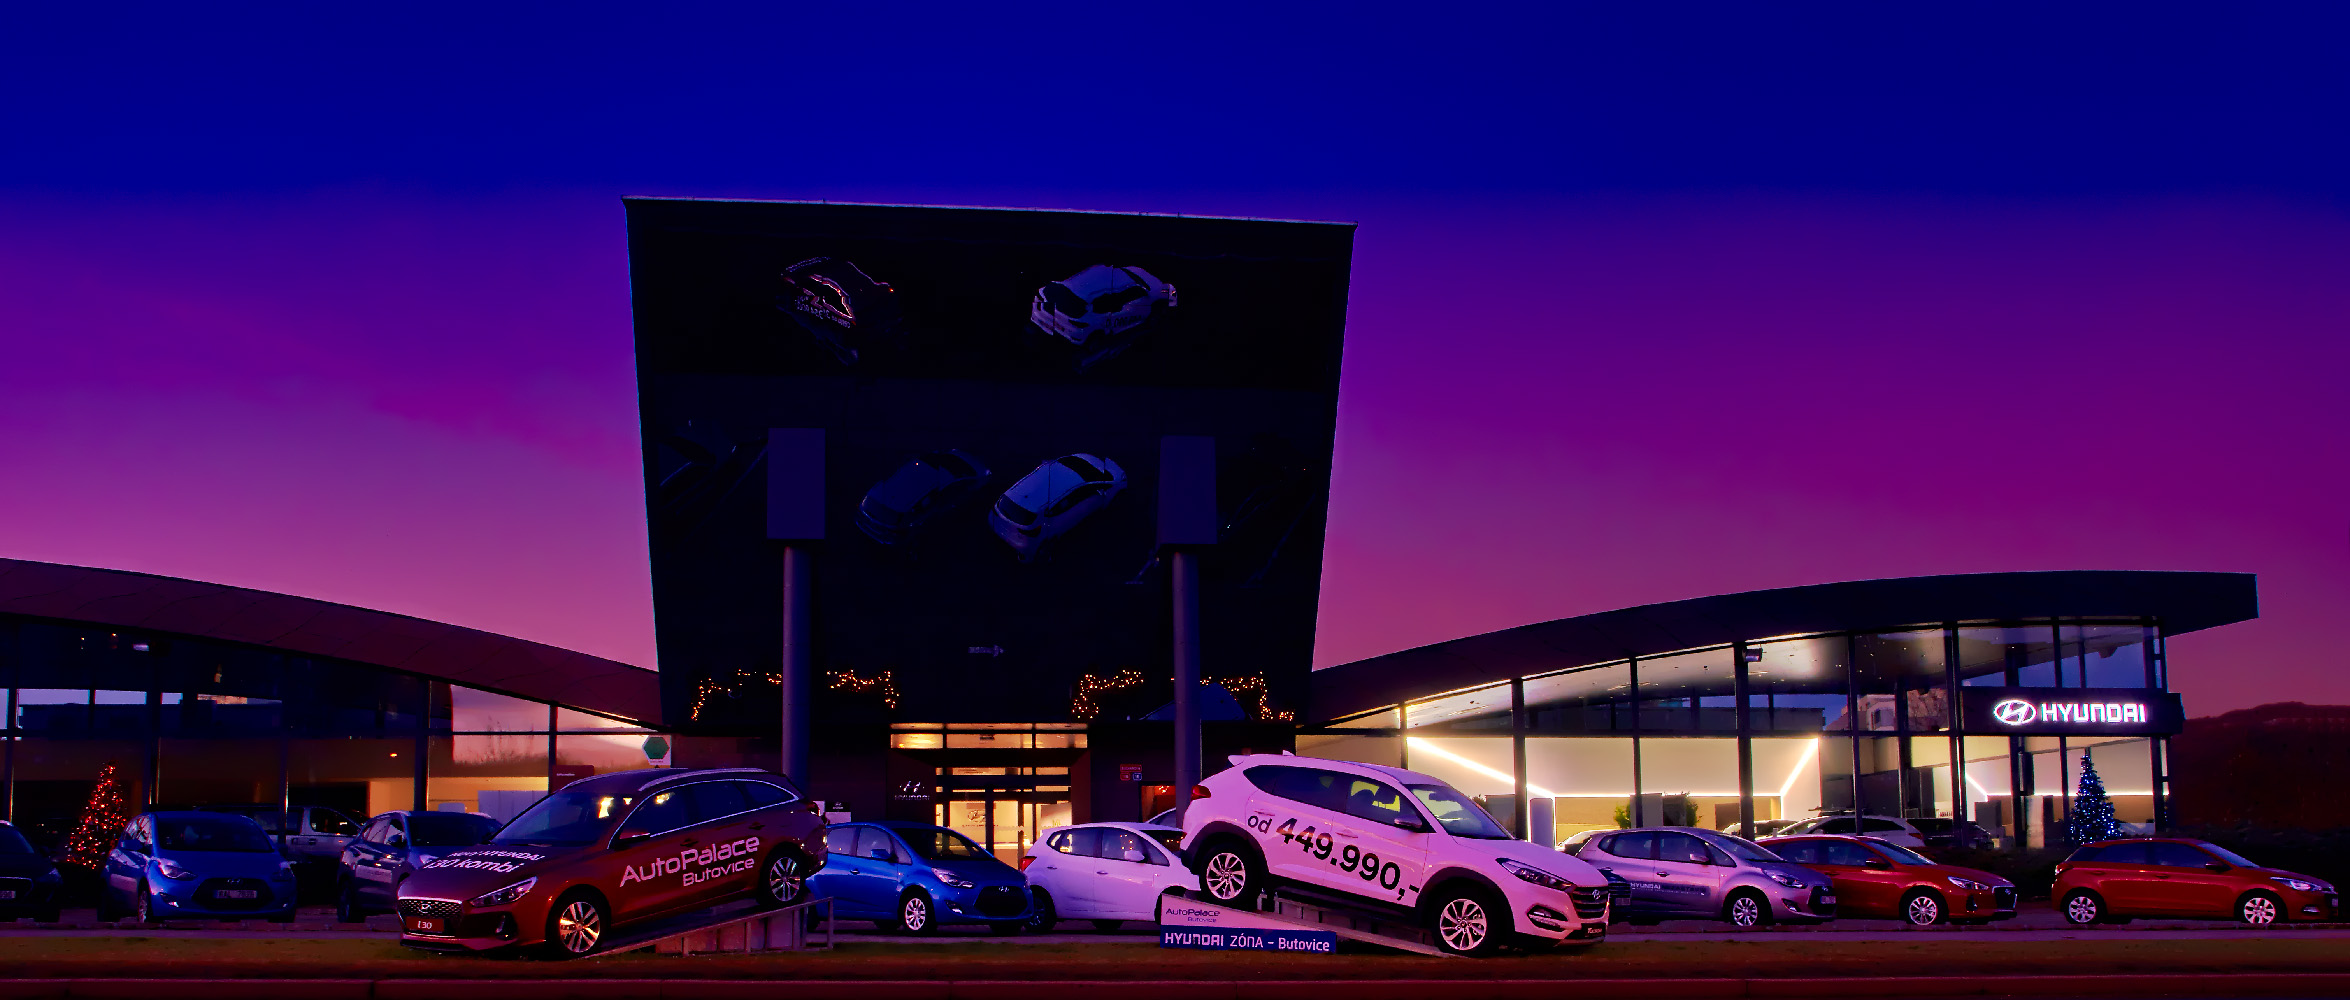 Noční fotka Auto Palace Butovice Hyundai od Jan Stojan Photography ©